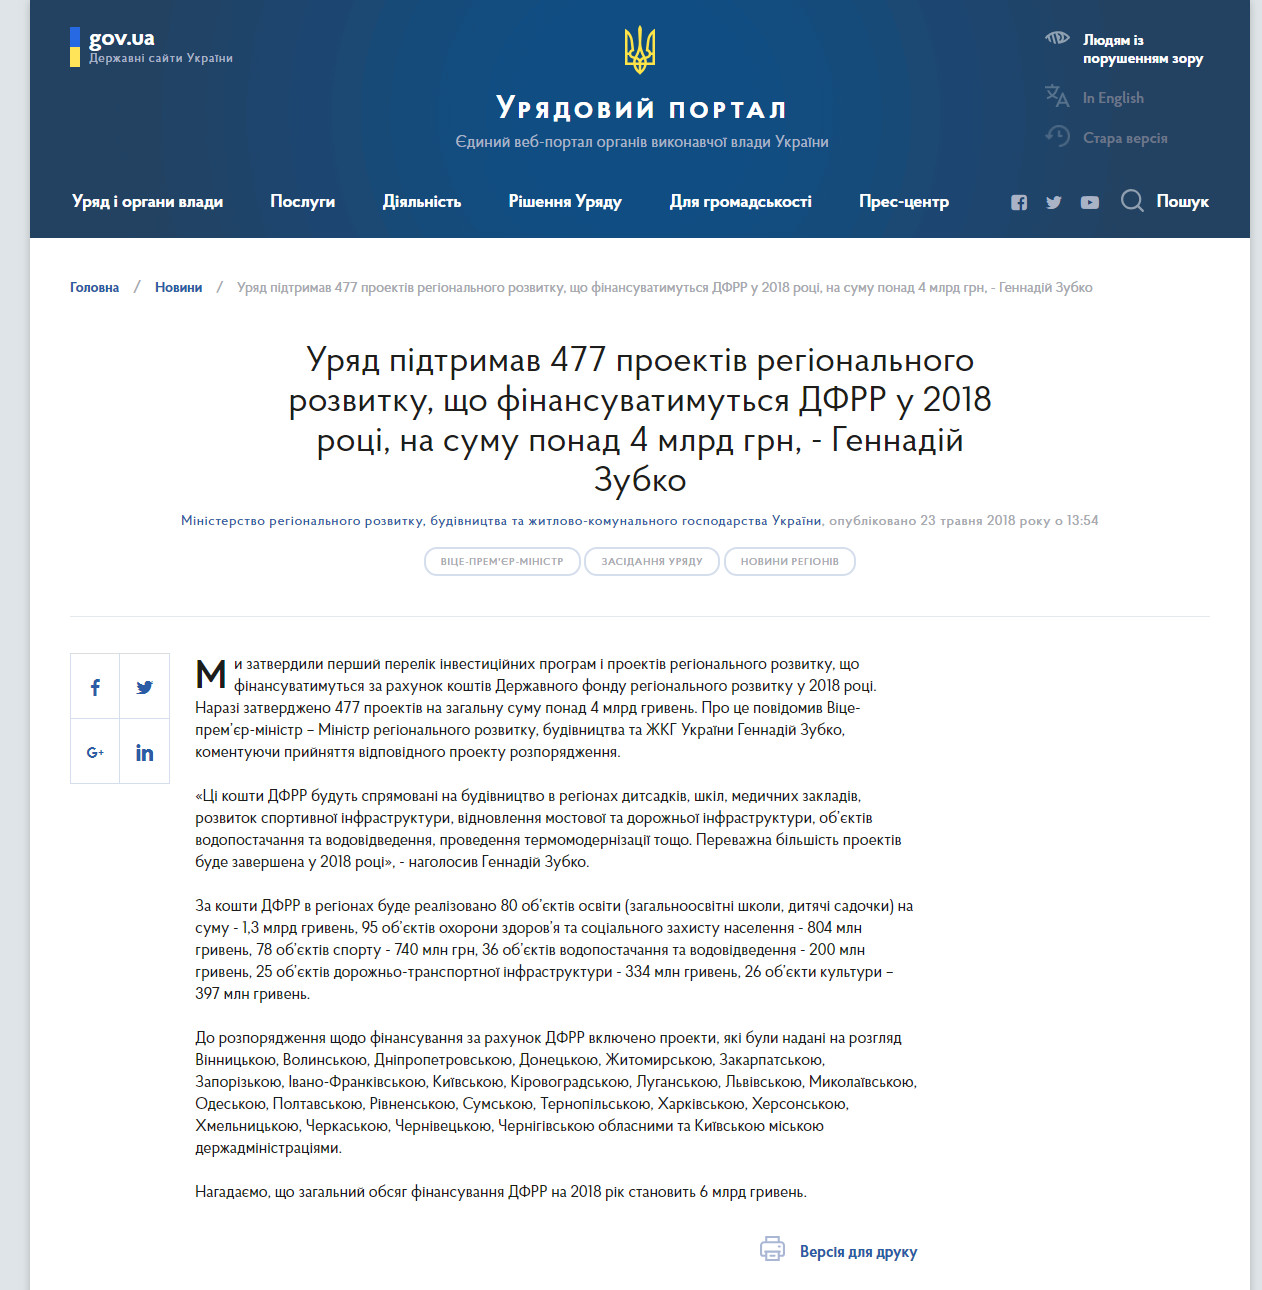 https://www.kmu.gov.ua/ua/news/uryad-pidtrimav-477-proektiv-regionalnogo-rozvitku-sho-finansuvatimutsya-dfrr-u-2018-roci-na-sumu-ponad-4-mlrd-grn-gennadij-zubko